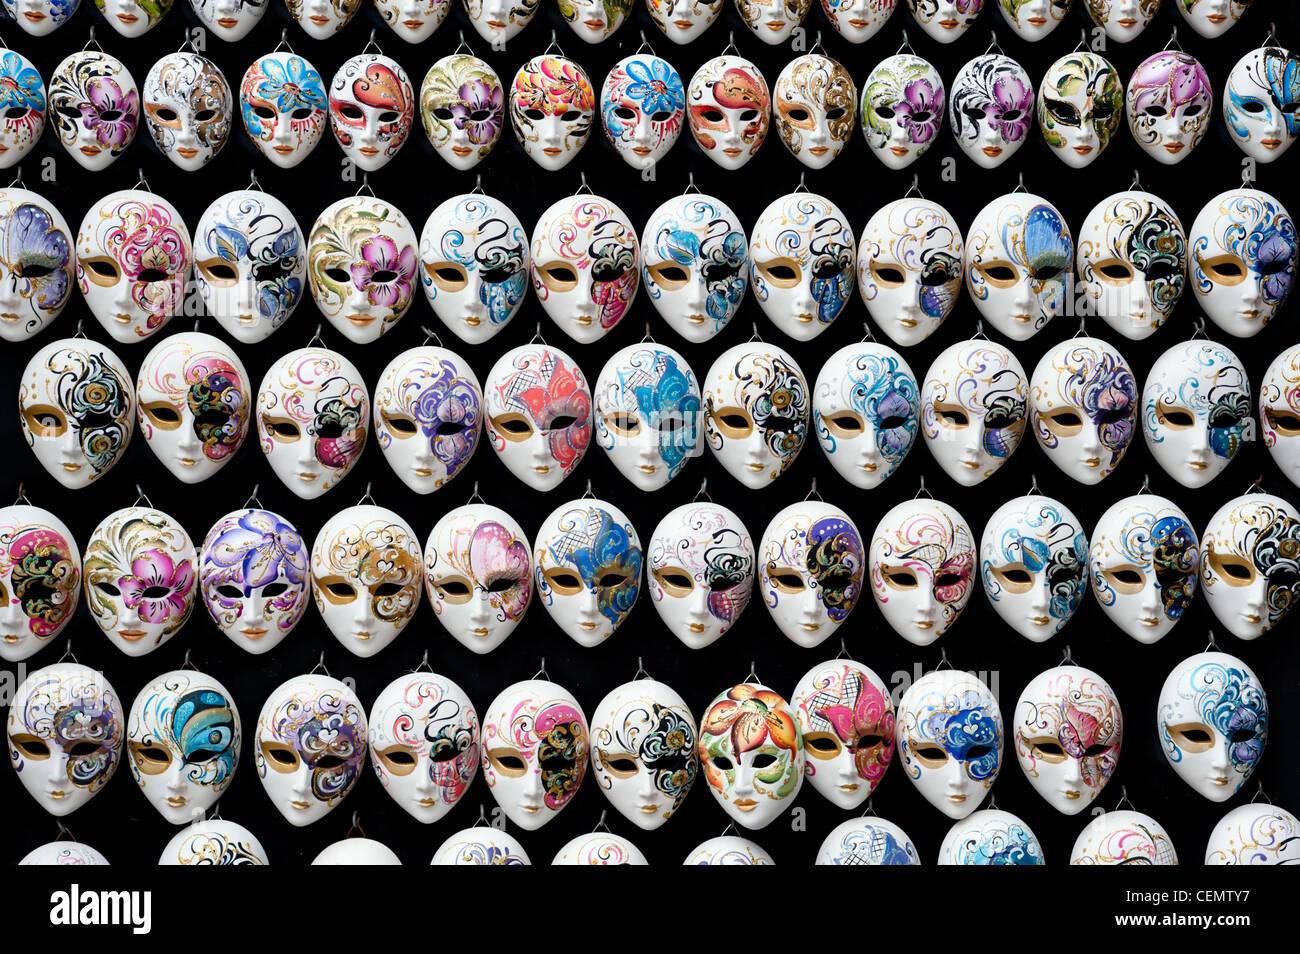 Les masques de carnaval vénitien souvenirs Banque D'Images